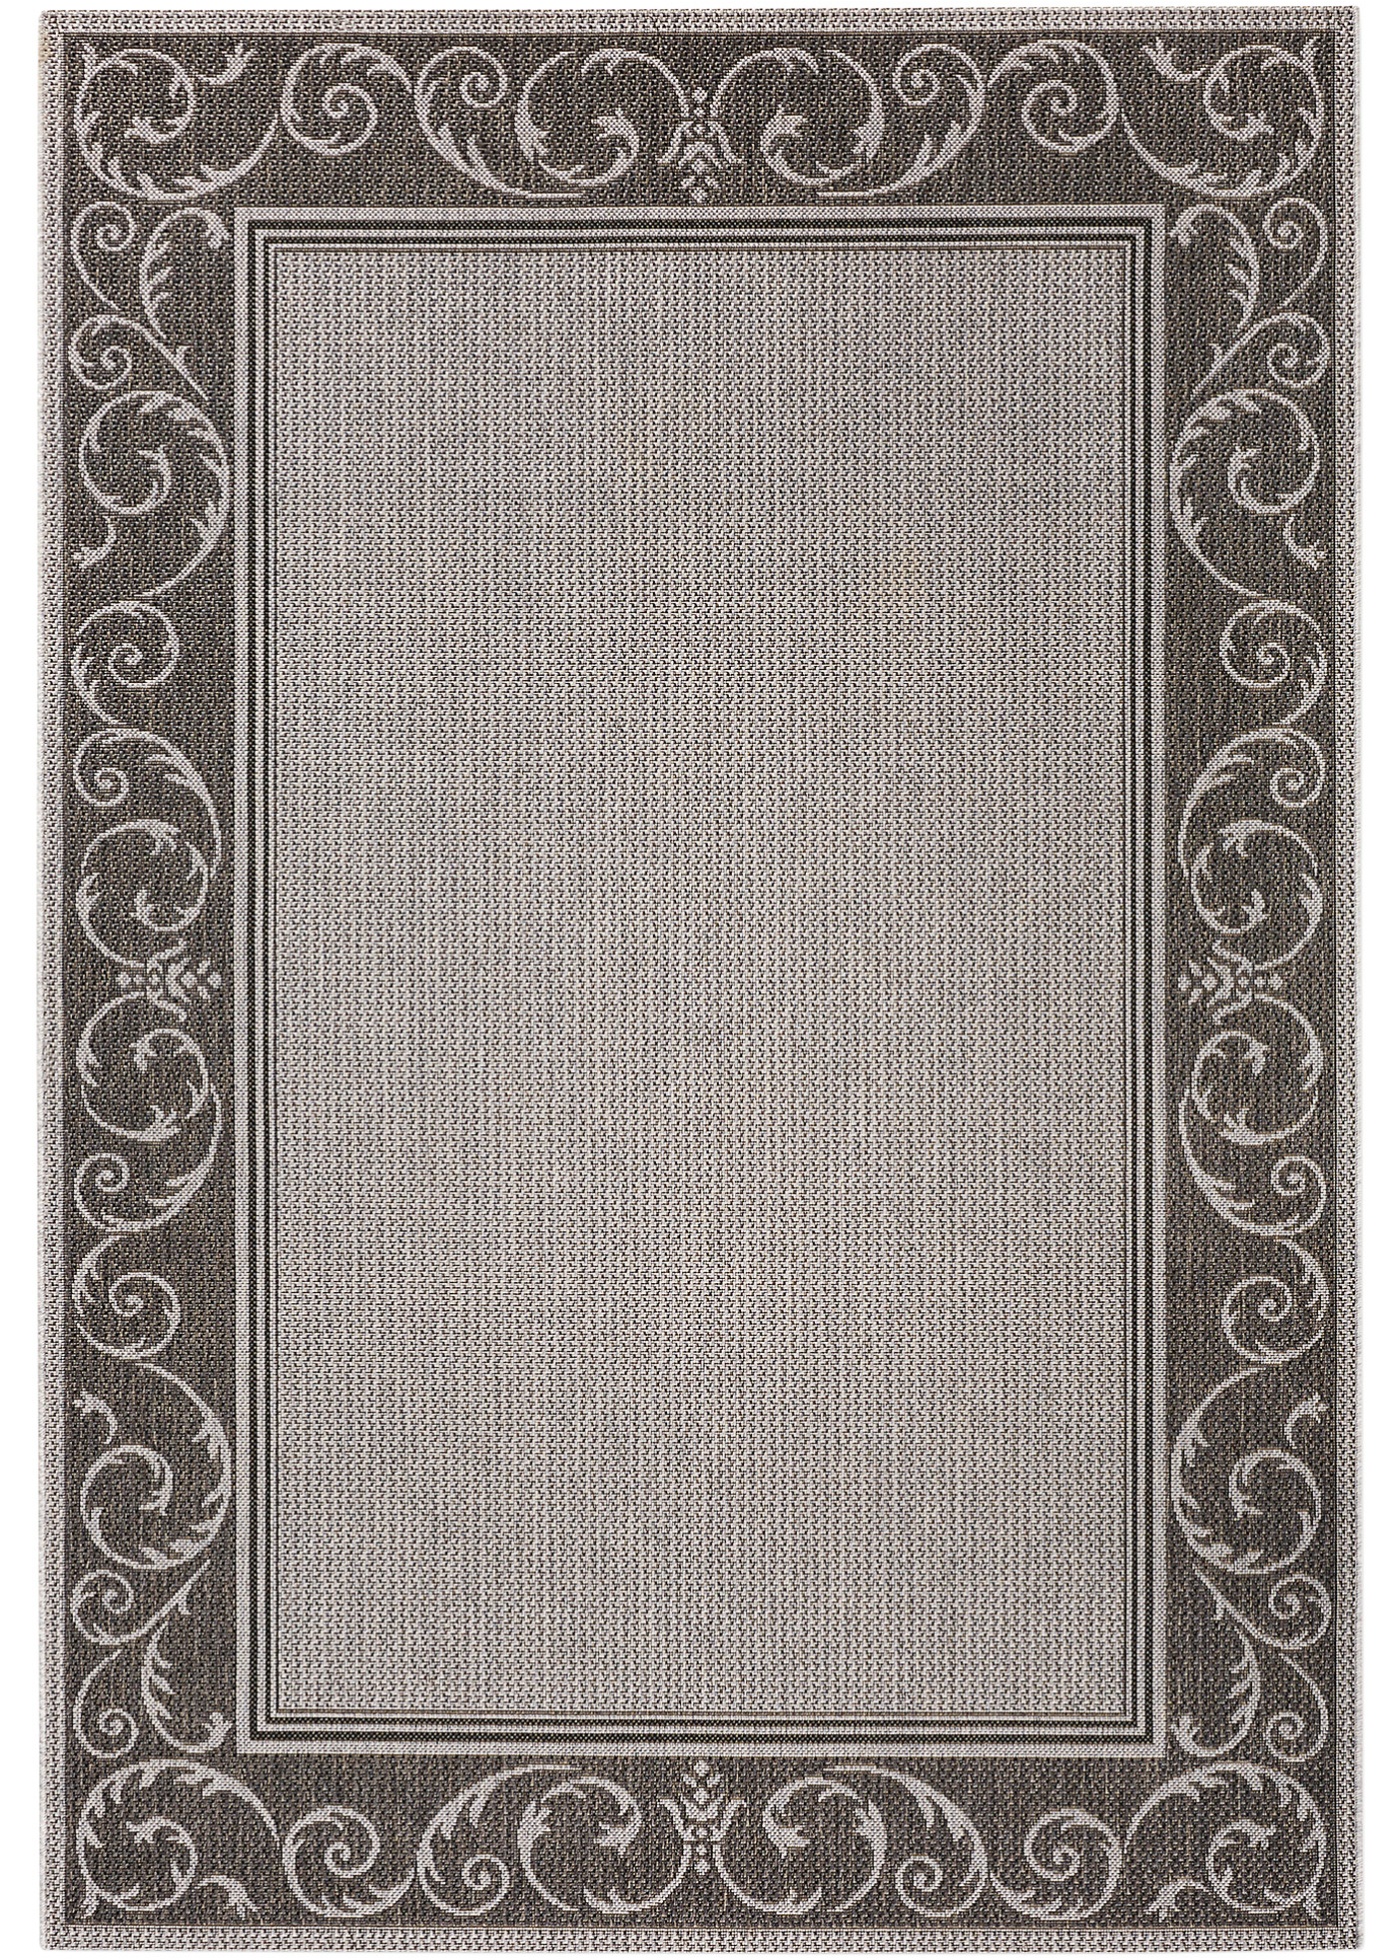 Der In- und Outdoor-Teppich ist ein wahrer Tausendsassa. (97266095) in grau